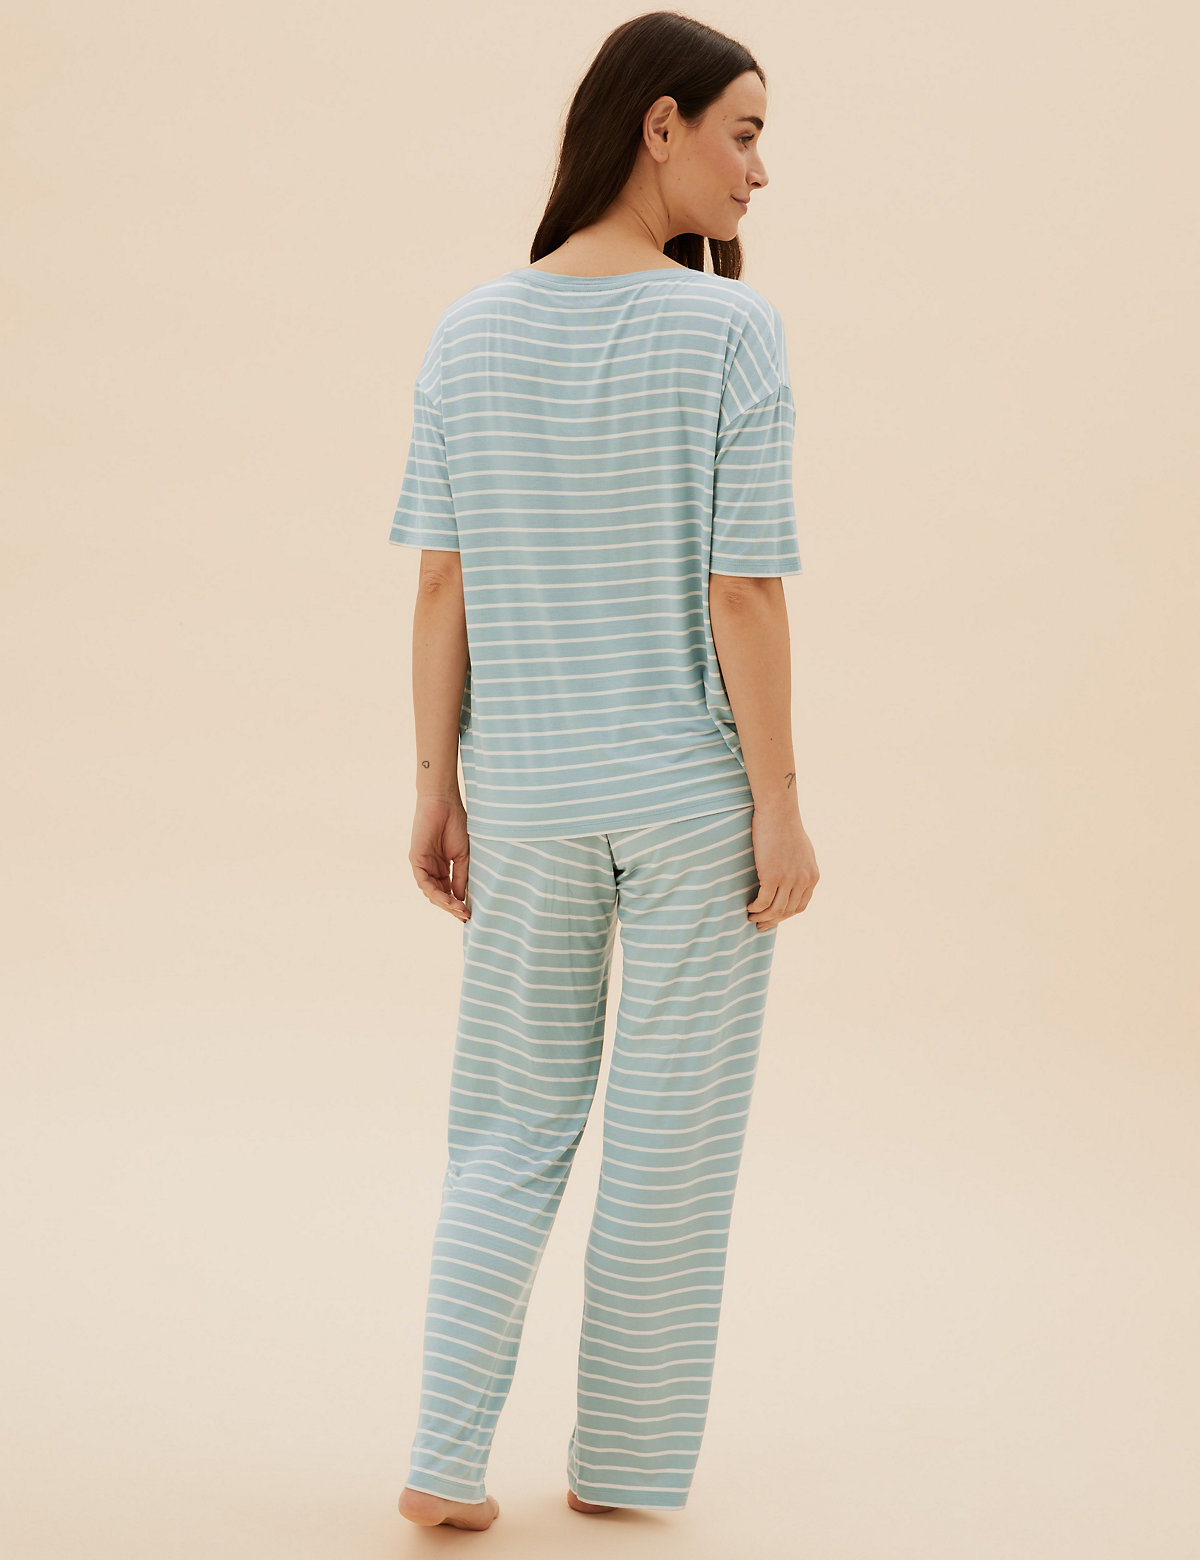 Slogan and Stripe Pyjama Set